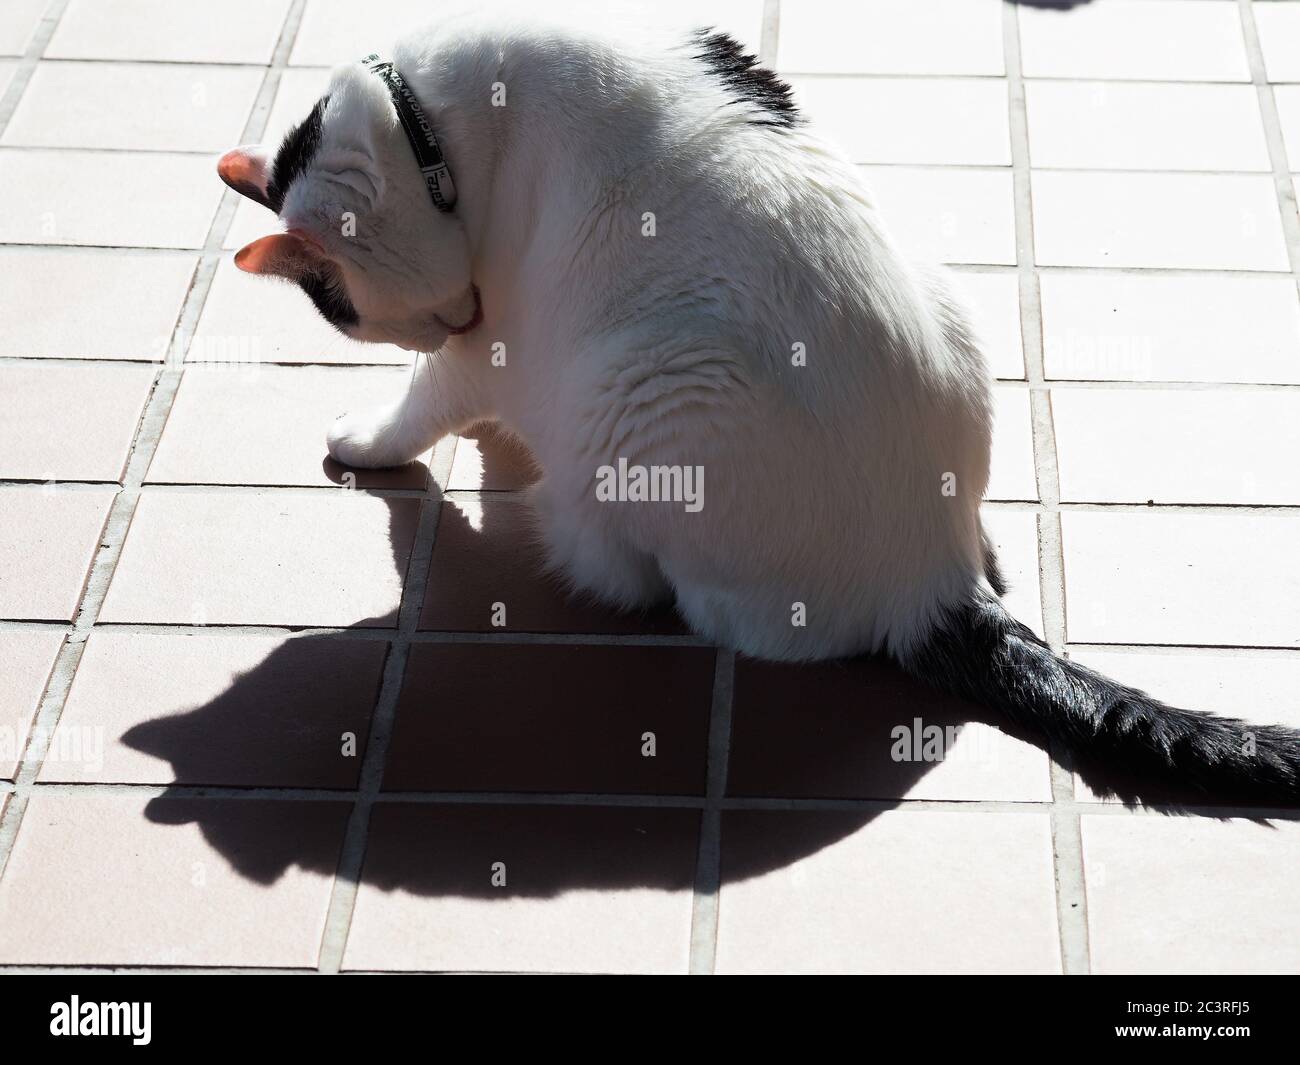 Un chat blanc espiègle avec des marques noires qui se posent au soleil et qui joue avec son ombre. Banque D'Images